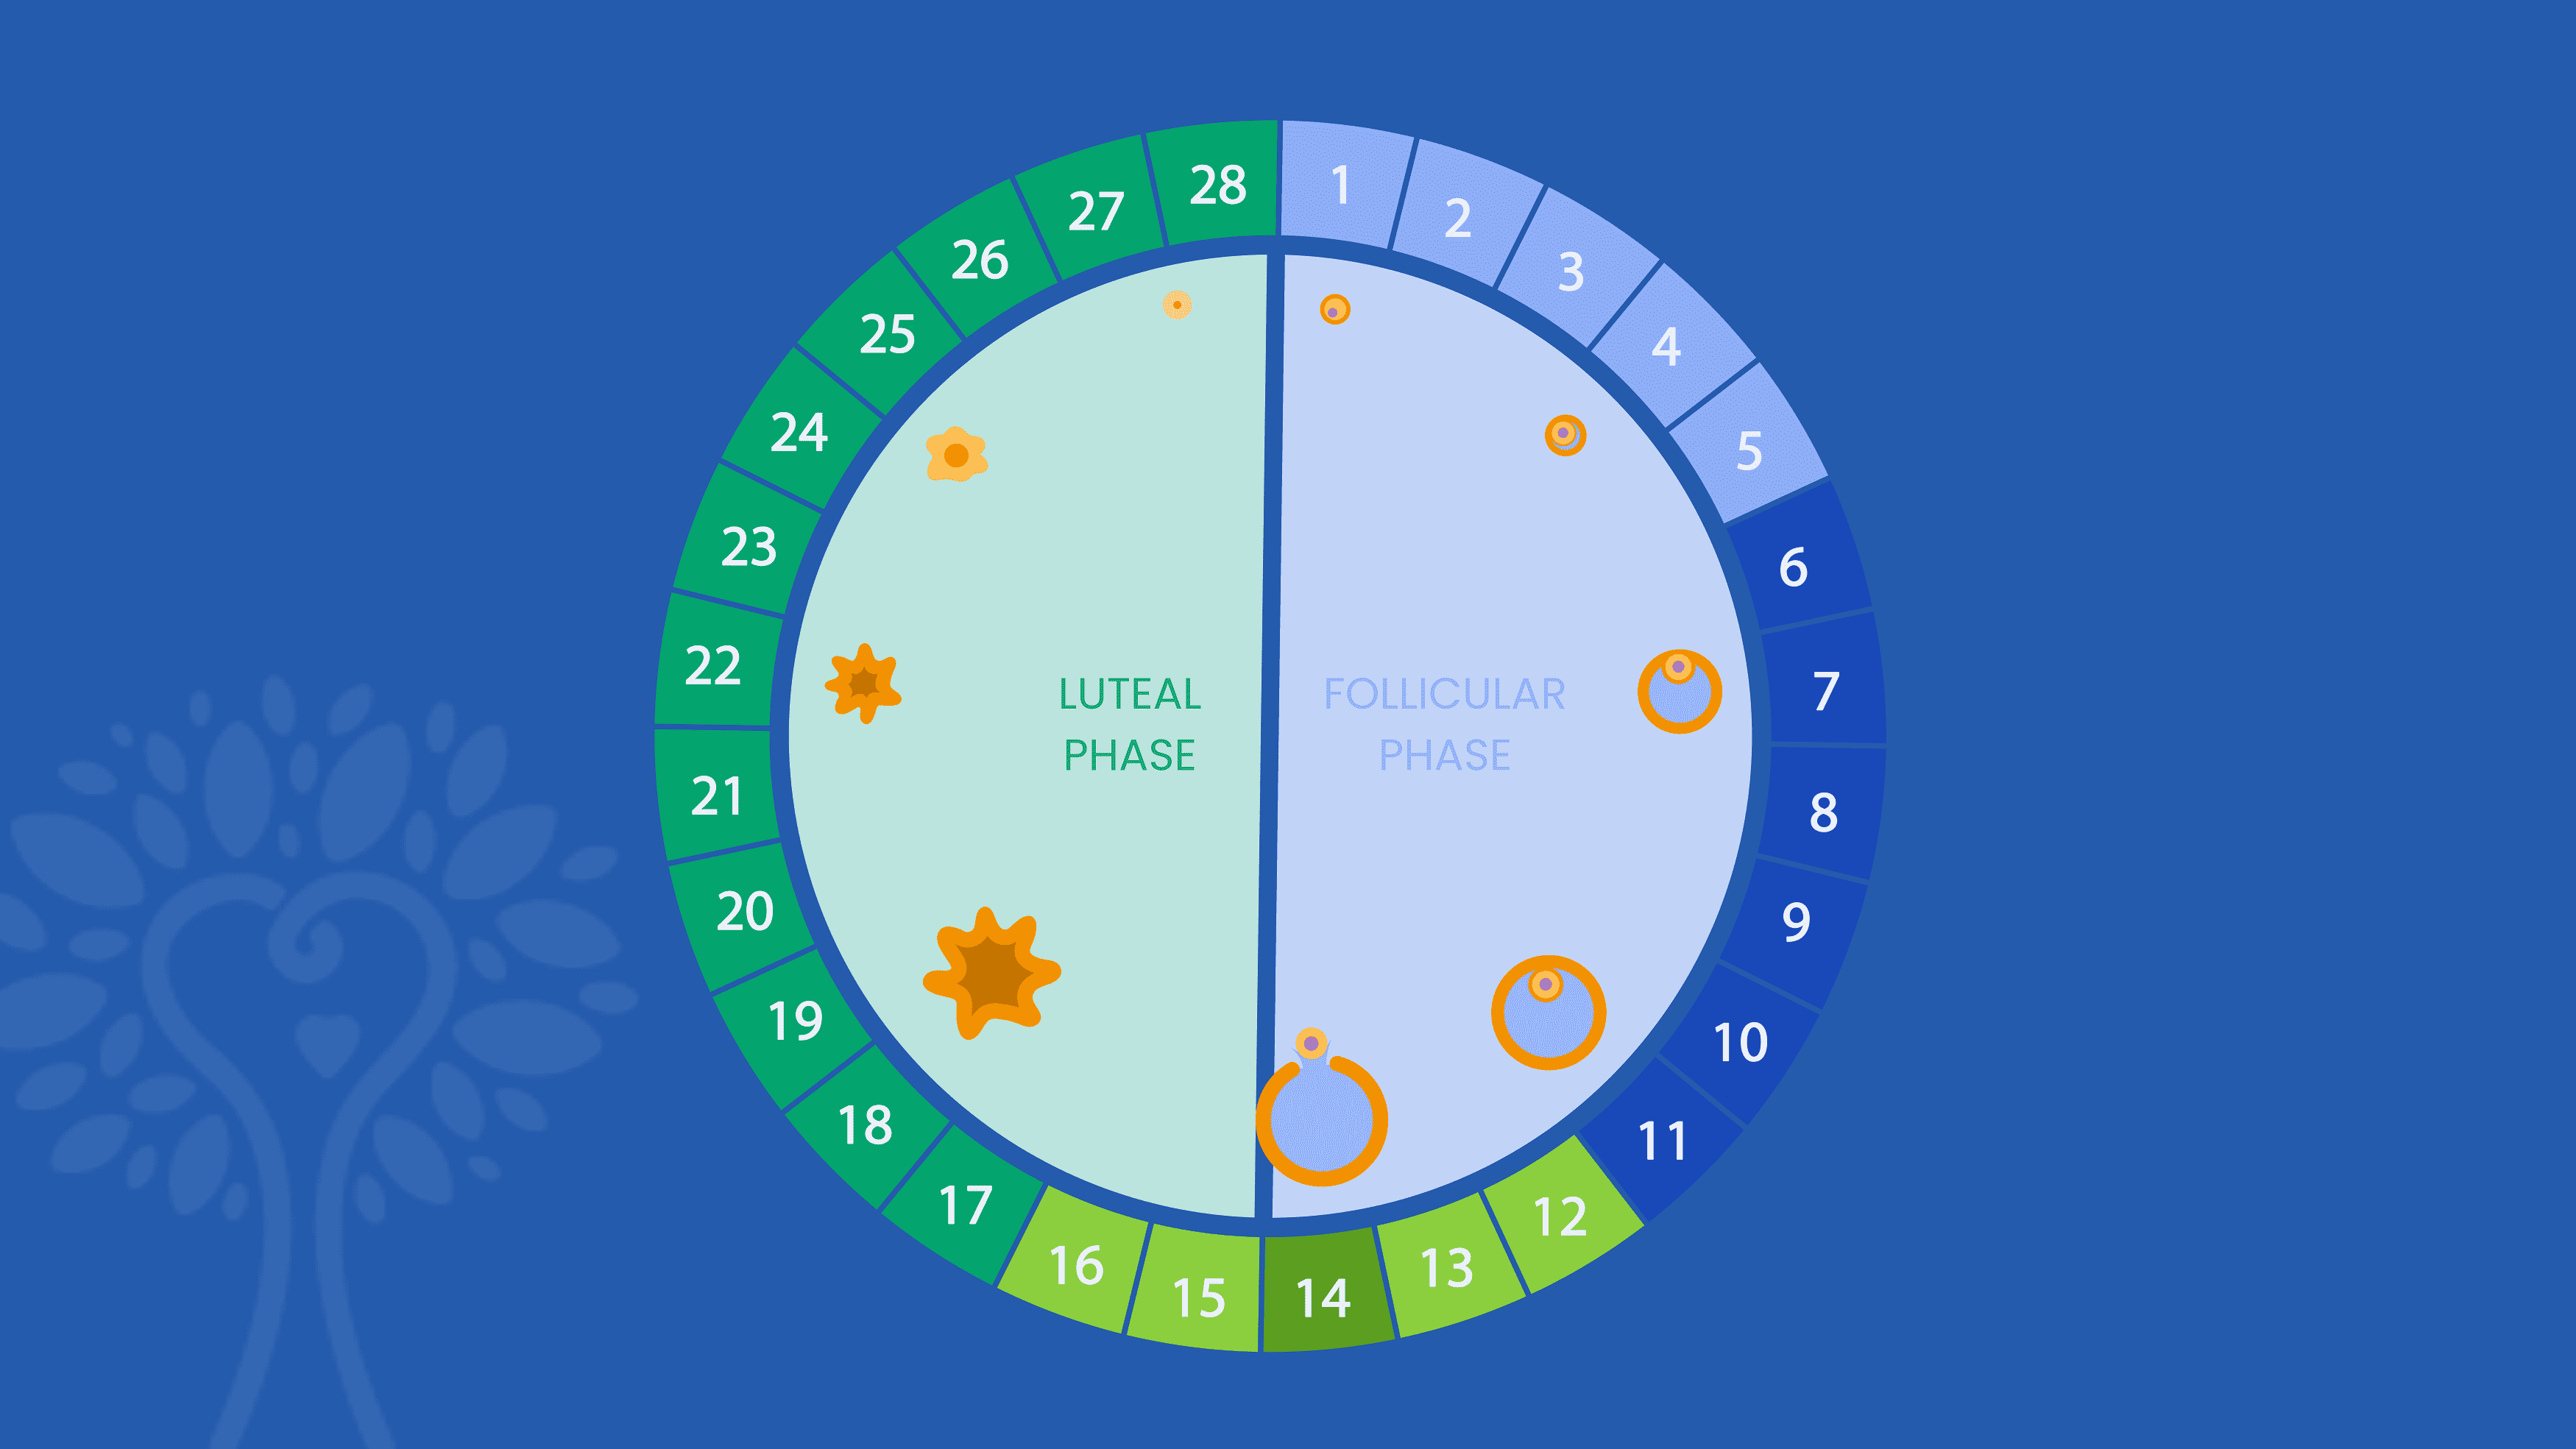 Fond bleu foncé avec calendrier circulaire de FIV indiquant les 28 jours d'un cycle menstruel ; les chiffres sont colorés dans différentes nuances de bleu et de vert selon leur phase.